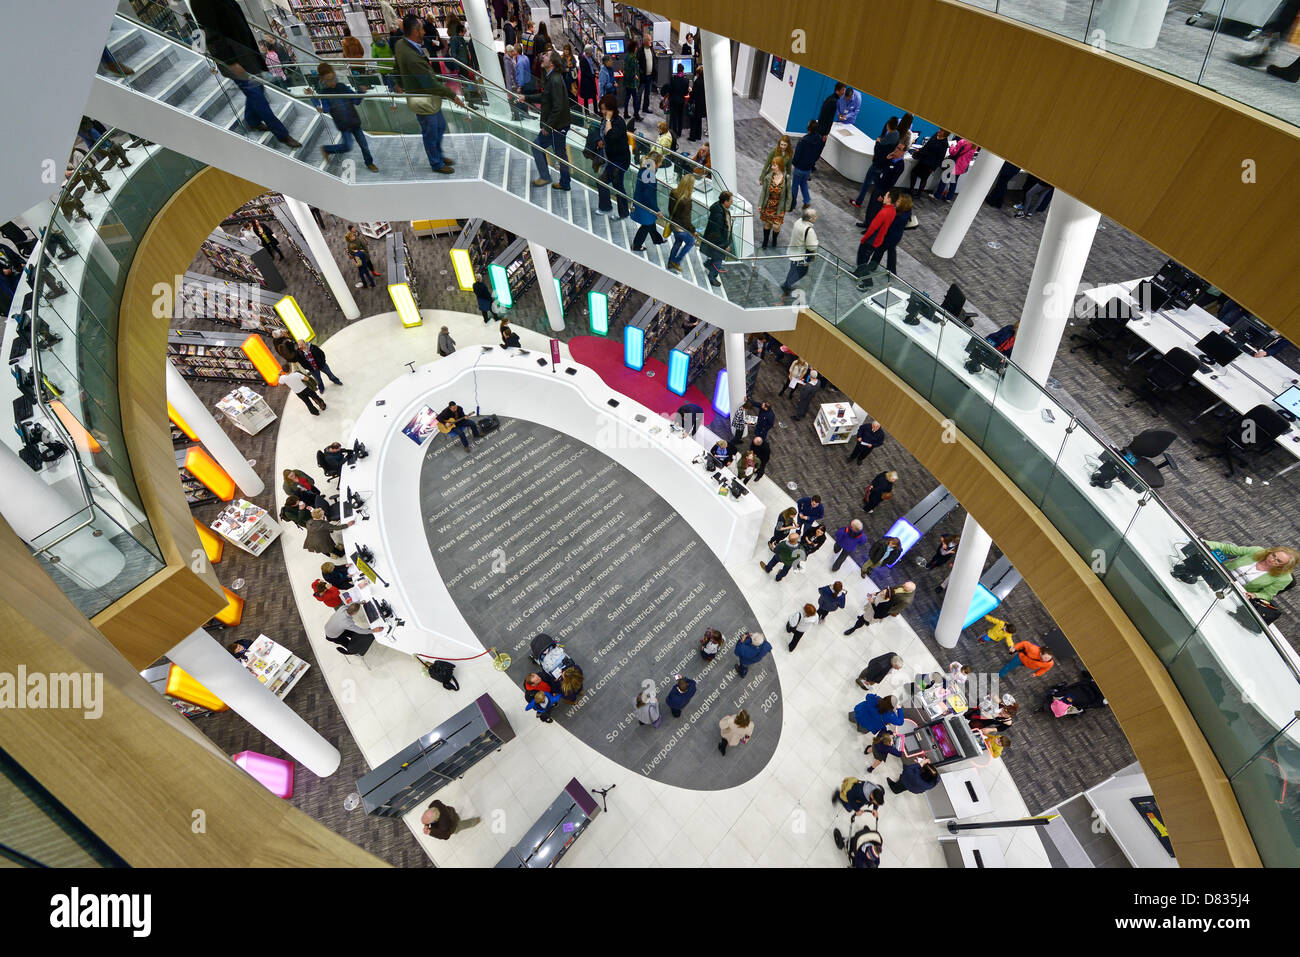 Liverpool, Royaume-Uni. 17 mai 2013. Les visiteurs voir l'atrium central de la bibliothèque centrale de Liverpool sur c'est officiel ré-ouverture après une rénovation de 50 millions de livres. Crédit : Andrew Paterson / Alamy Live News Banque D'Images